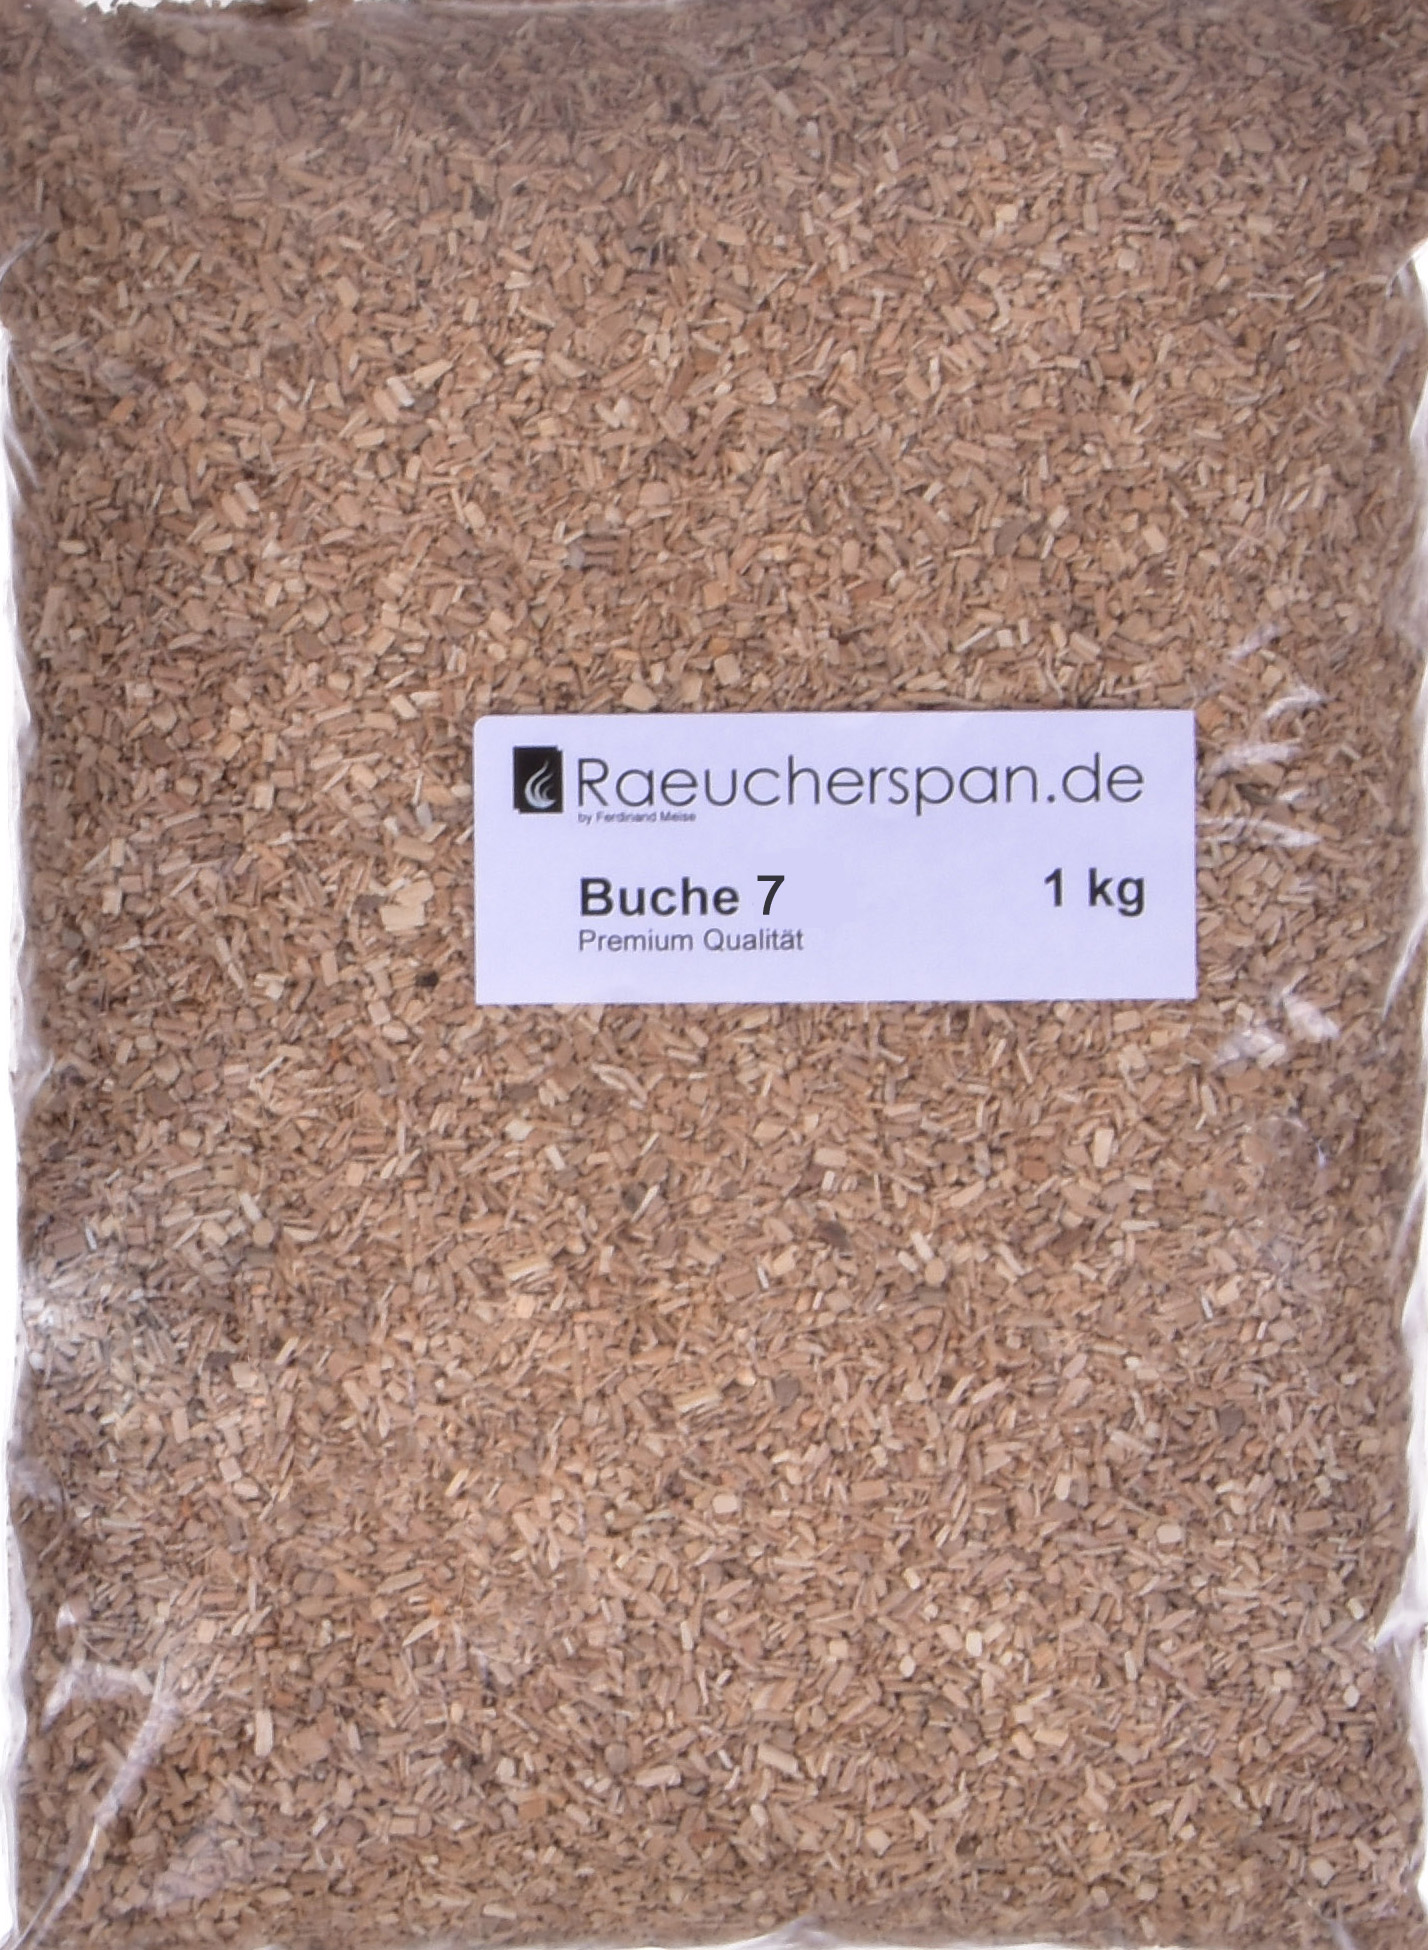 Wacholder Mehl/Späne 1,0-2,5mm Forelle Räuchermehl Räucherspäne Buche 3,0 kg 